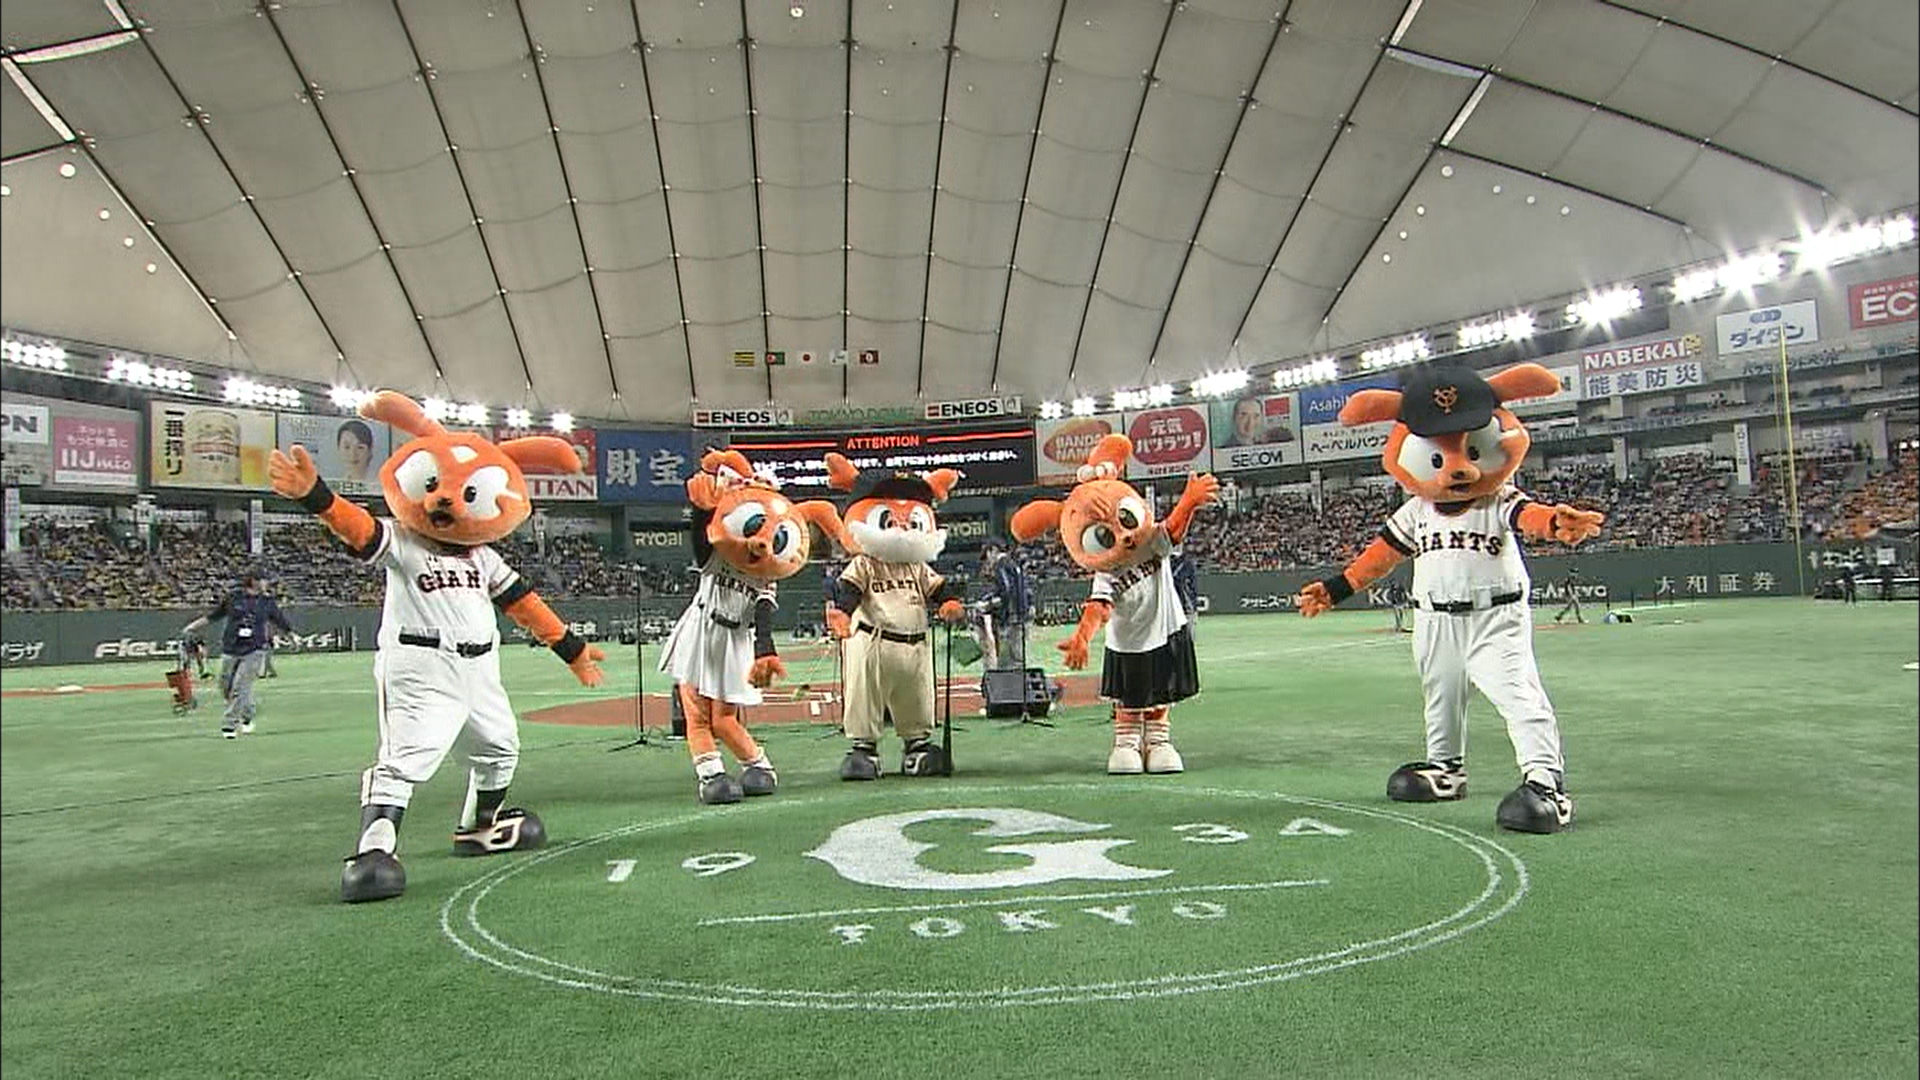 ジャビット誕生物語 球団マスコット Dramatic Baseball 日本テレビ